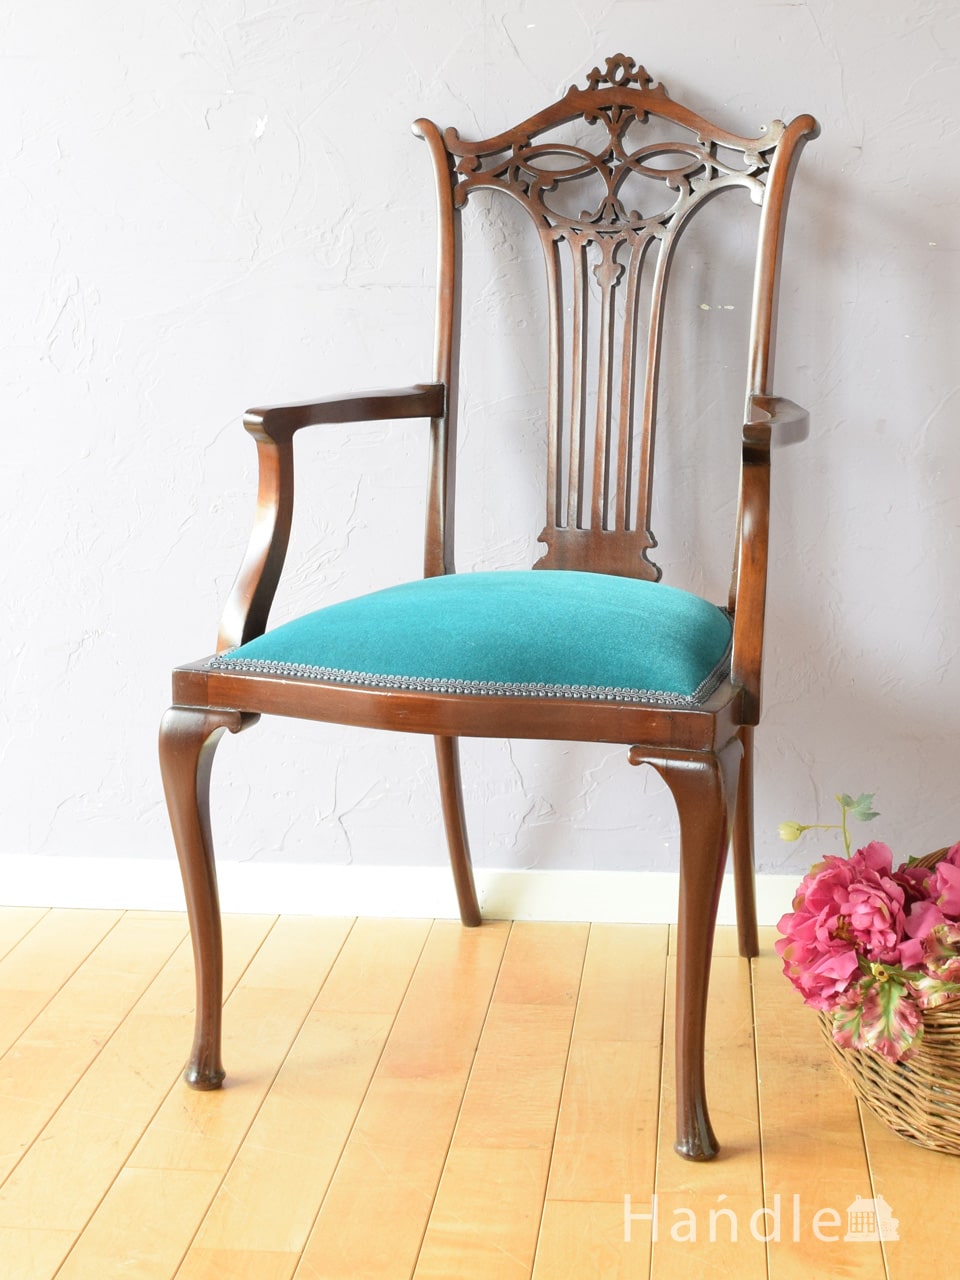 アンティークの美しい椅子、芸術的な透かし彫りのアームチェア (q-450-c)